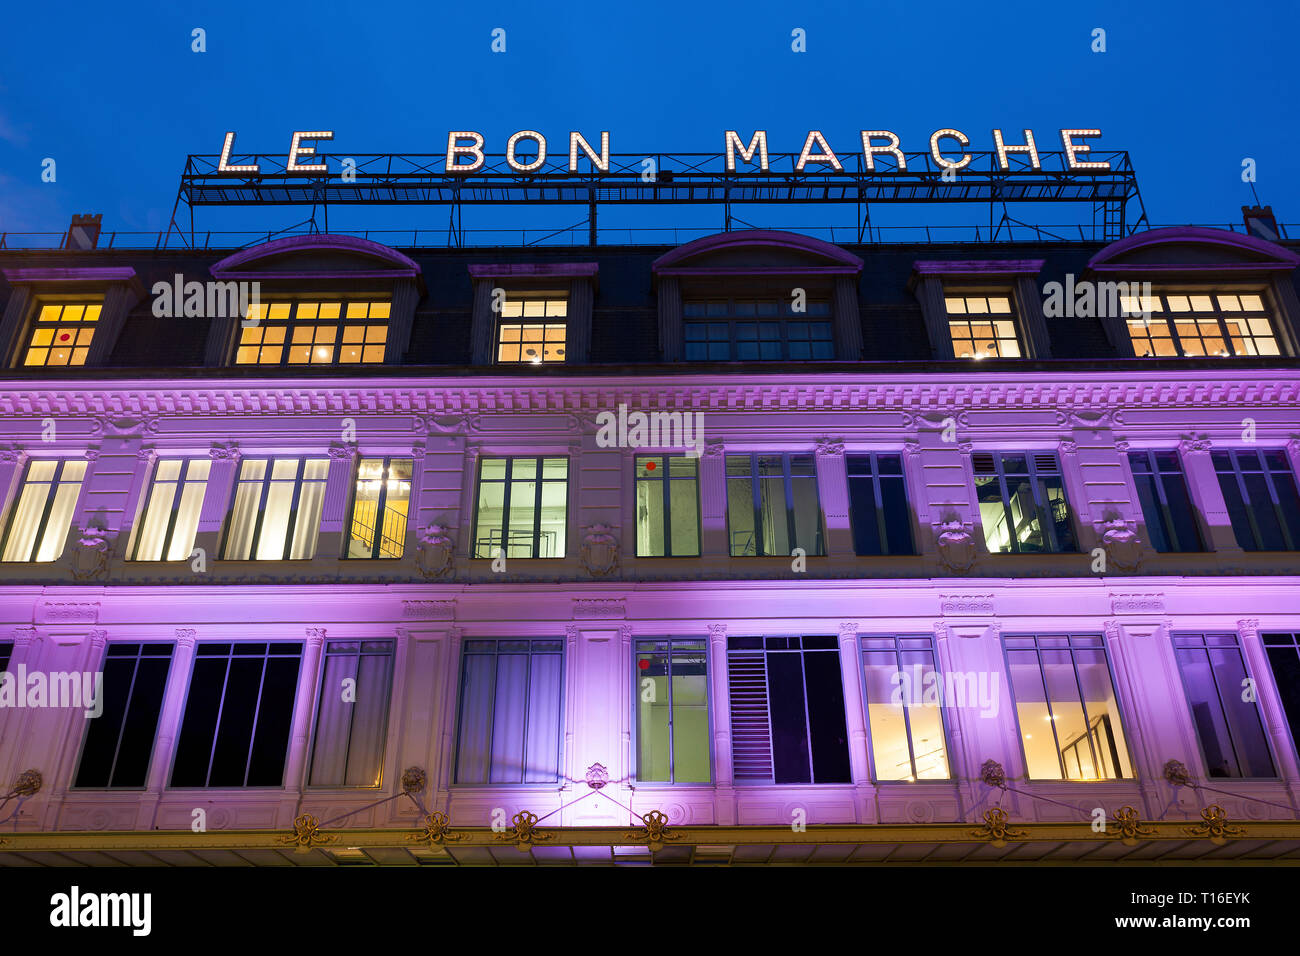 Image of The fabric department of Le Bon Marche stores, Paris, c